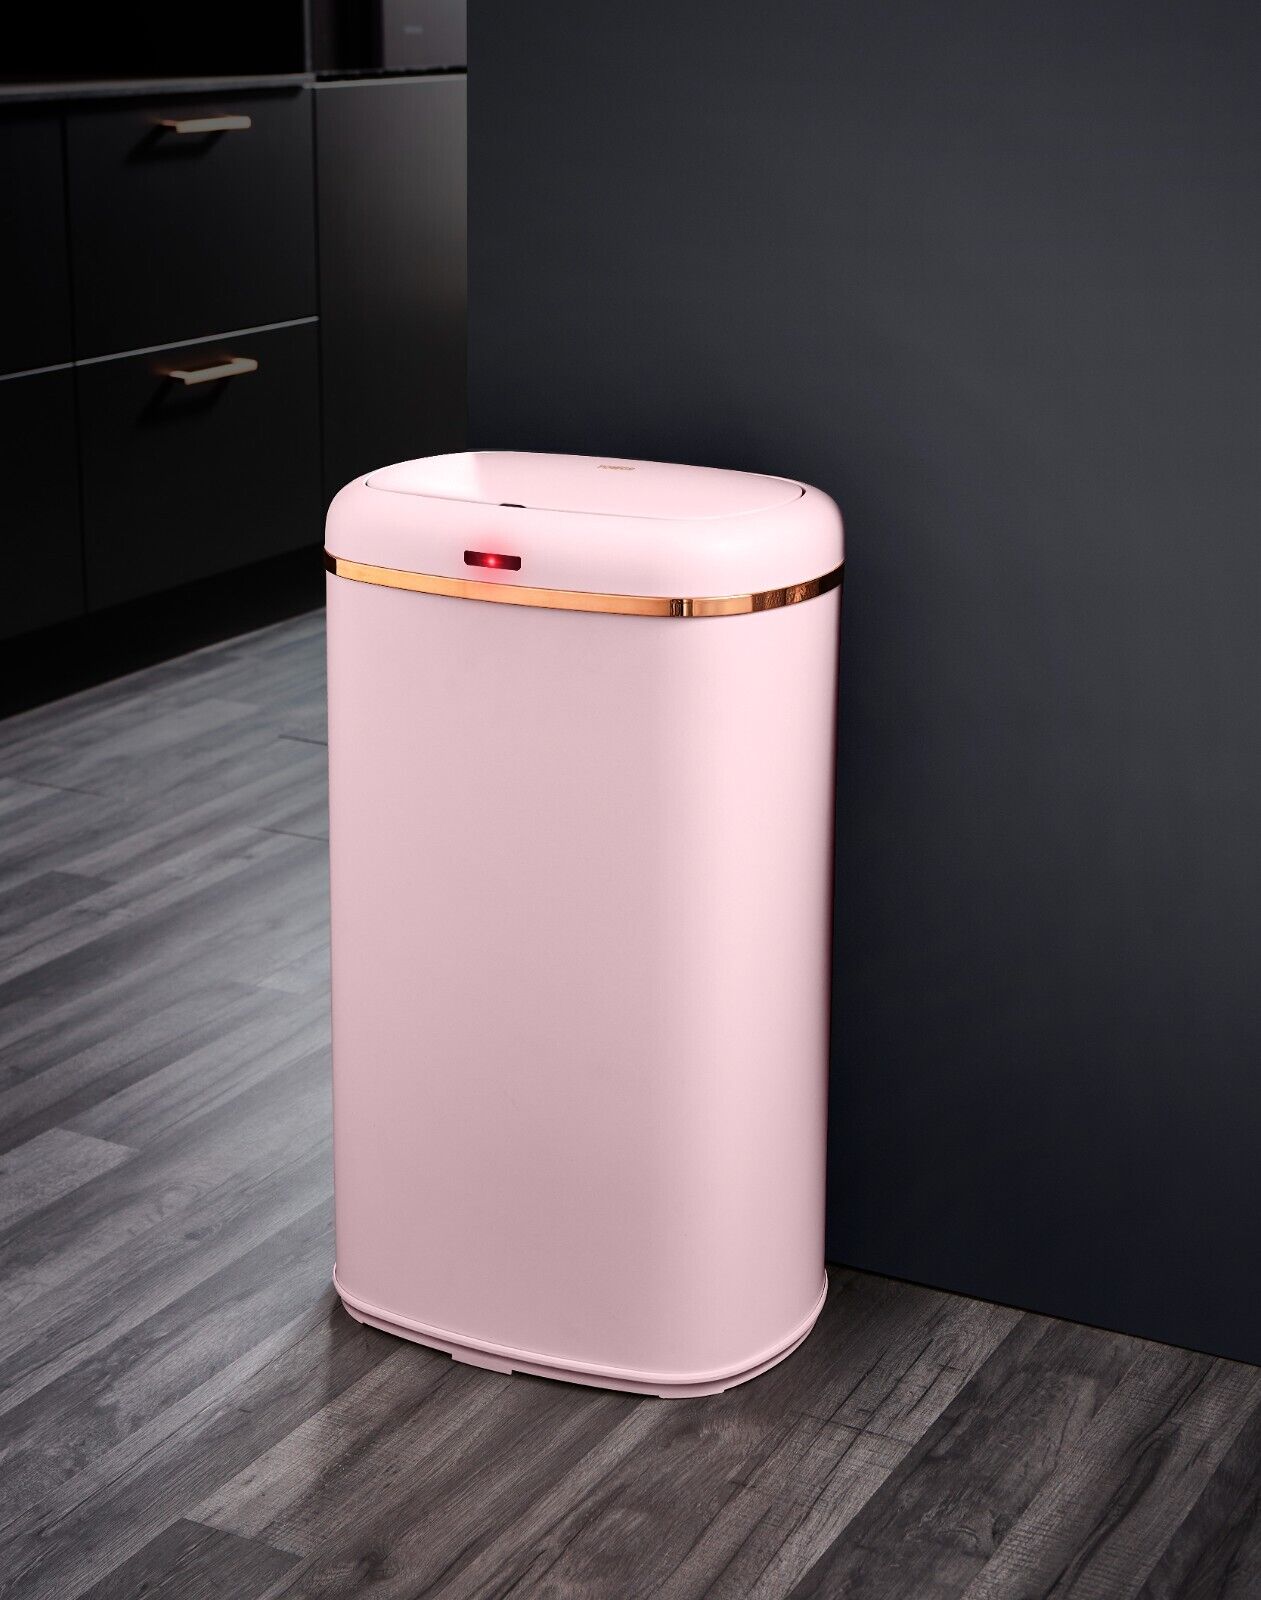 Tower Cavaletto Kitchen Sensor Bin & Storage Accessories Set of 7 Pink/Rose Gold